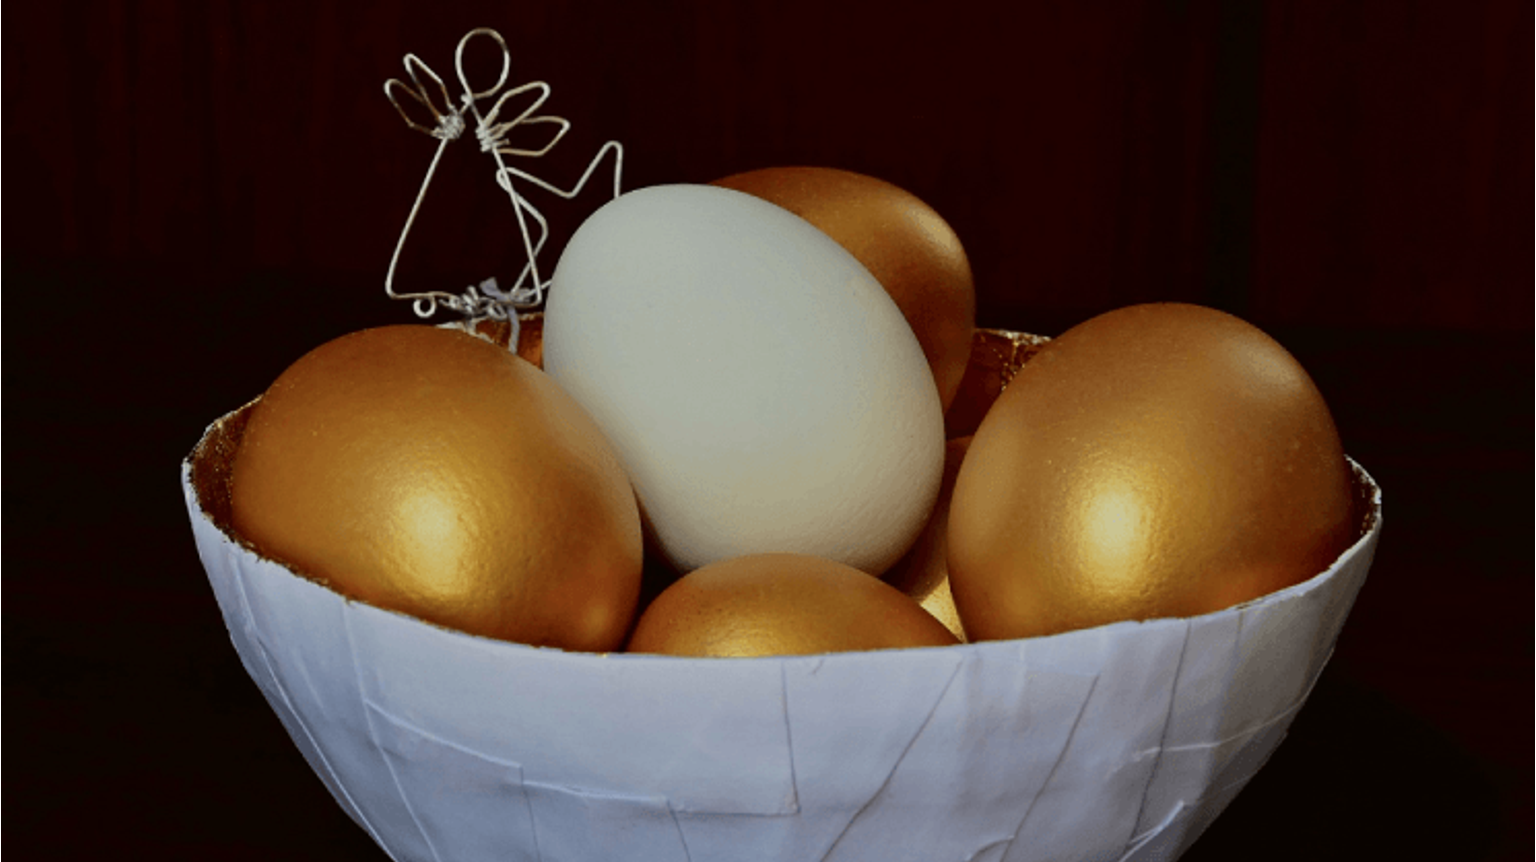 thumbnail for blog article named: Regels van de actie "Gouden Eieren"